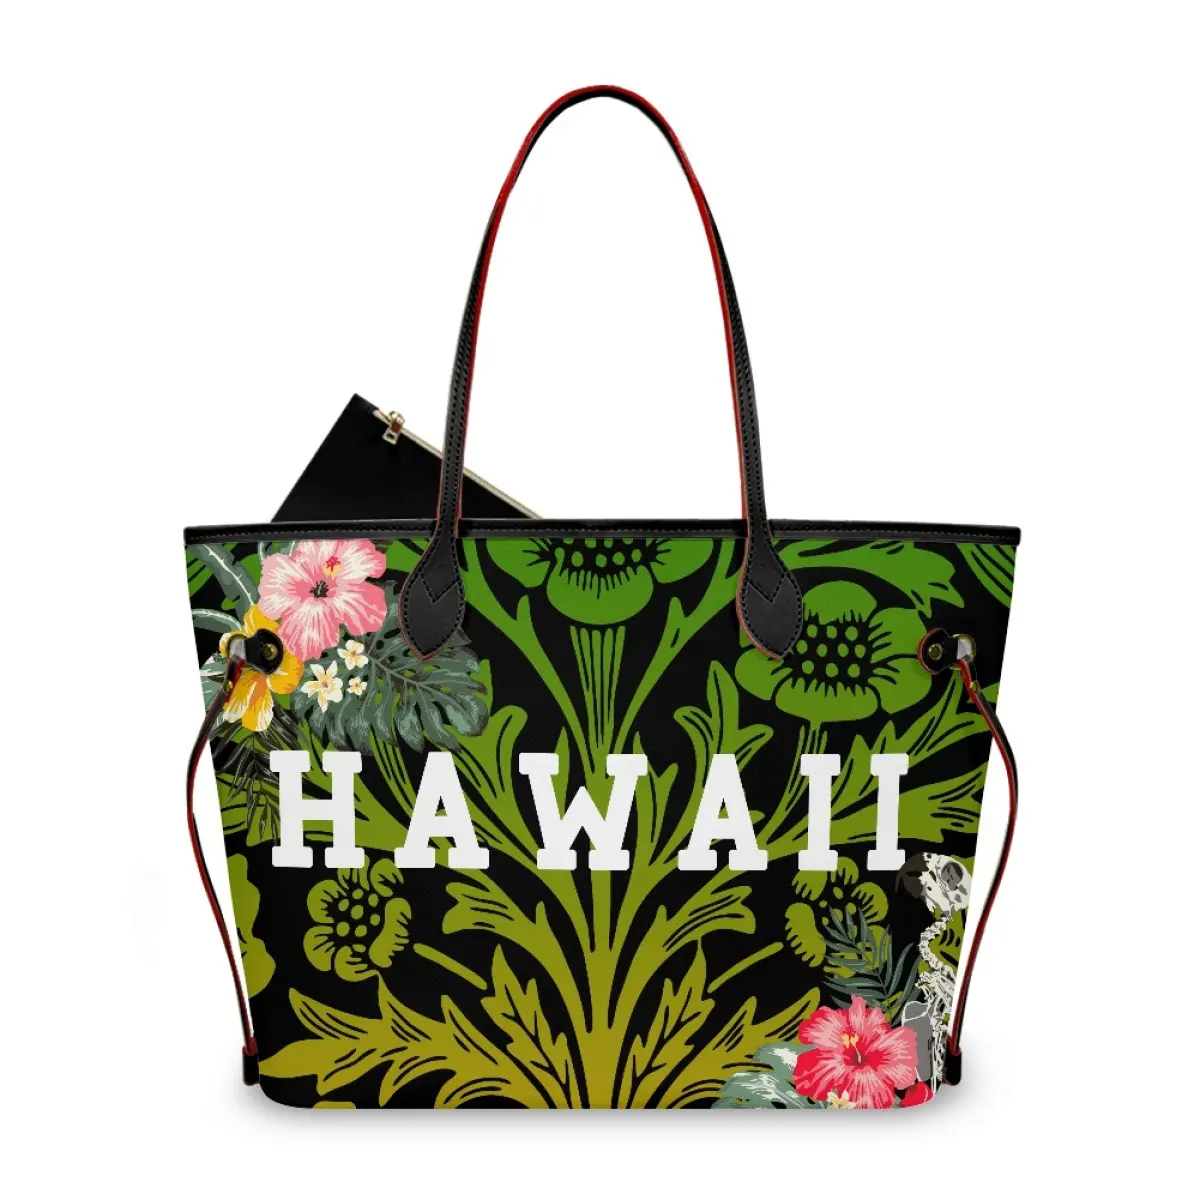 Nouveau design de sacs à bandoulière tribaux polynésiens sacs fourre-tout en cuir artificiel d'Hawaii personnalisés et imperméables pour femmes grand sac de luxe pour faire la navette